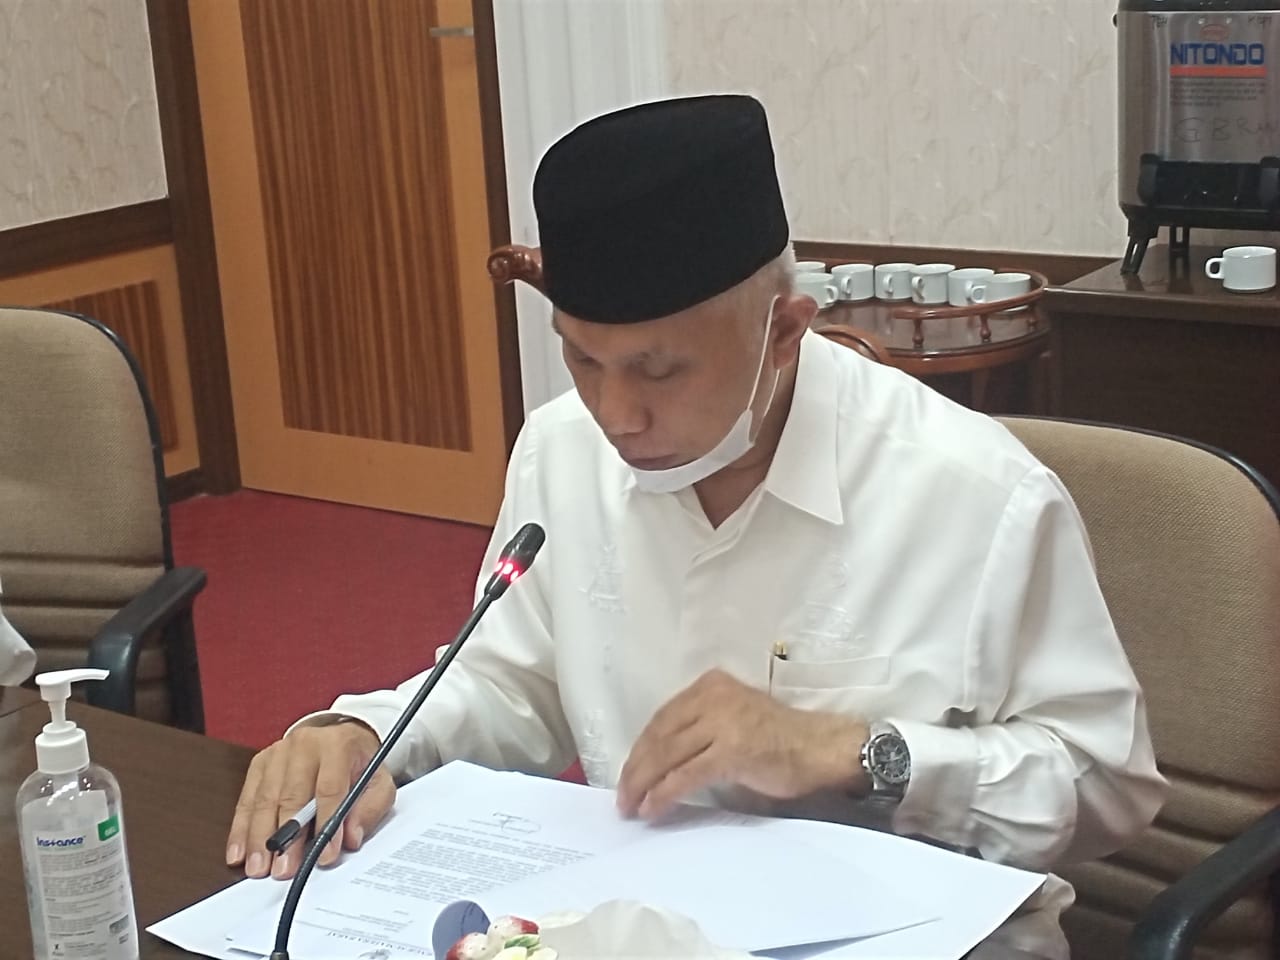 Gubernur Sumbar, Mahyeldi Ansharullah, dalam Rapat Proses dan Progres Perubahan Kegiatan Usaha (Konversi) Bank Nagari menjadi Bank Umum Syariah, Kamis (11/3/2021), di Padang.